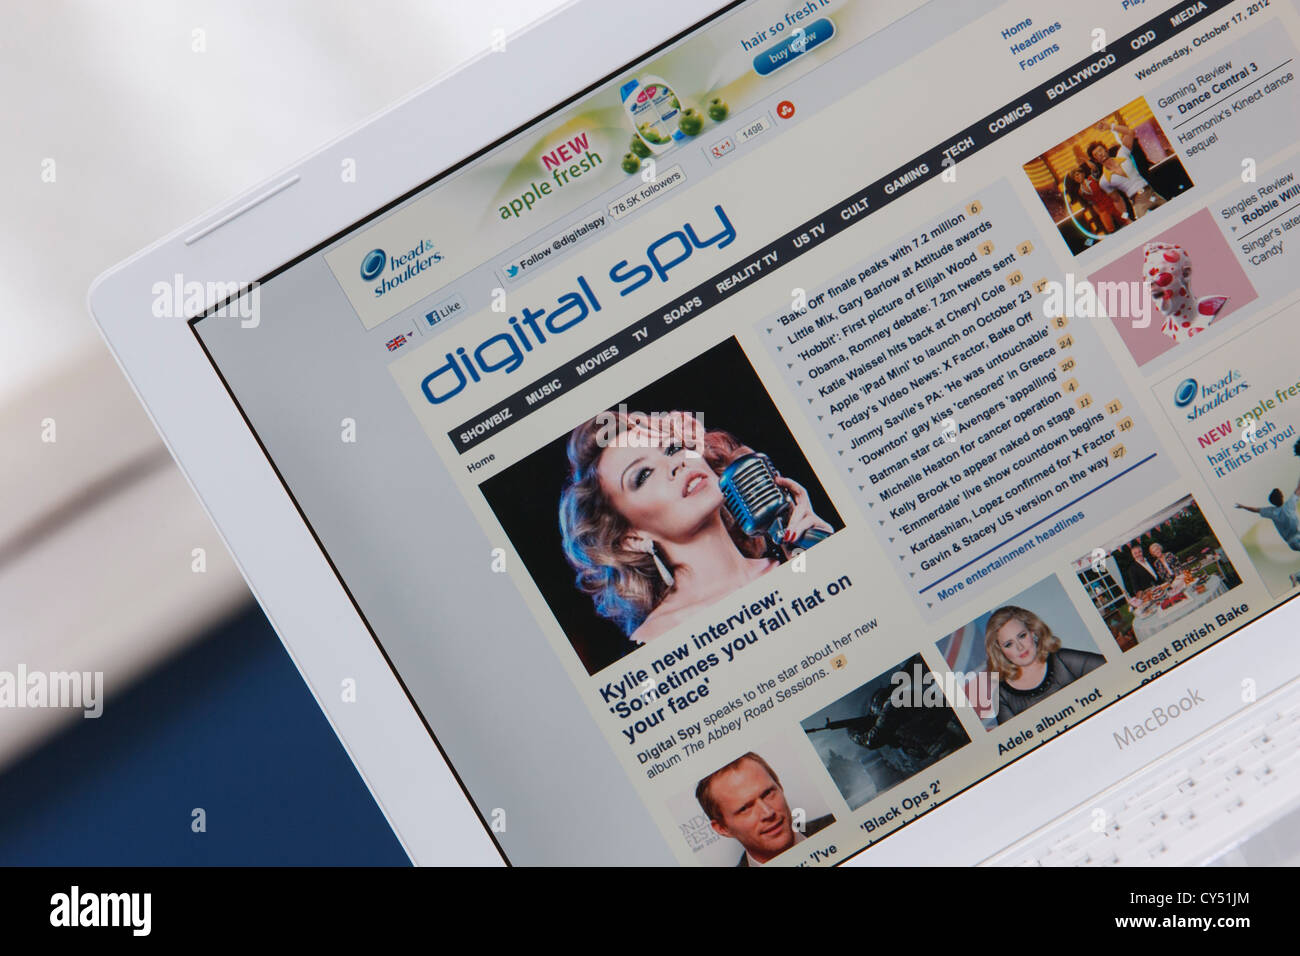 Une page web à partir du showbiz, divertissement et médias Nouvelles site Digital Spy est illustré le fait d'être vu sur un écran d'ordinateur portable Banque D'Images